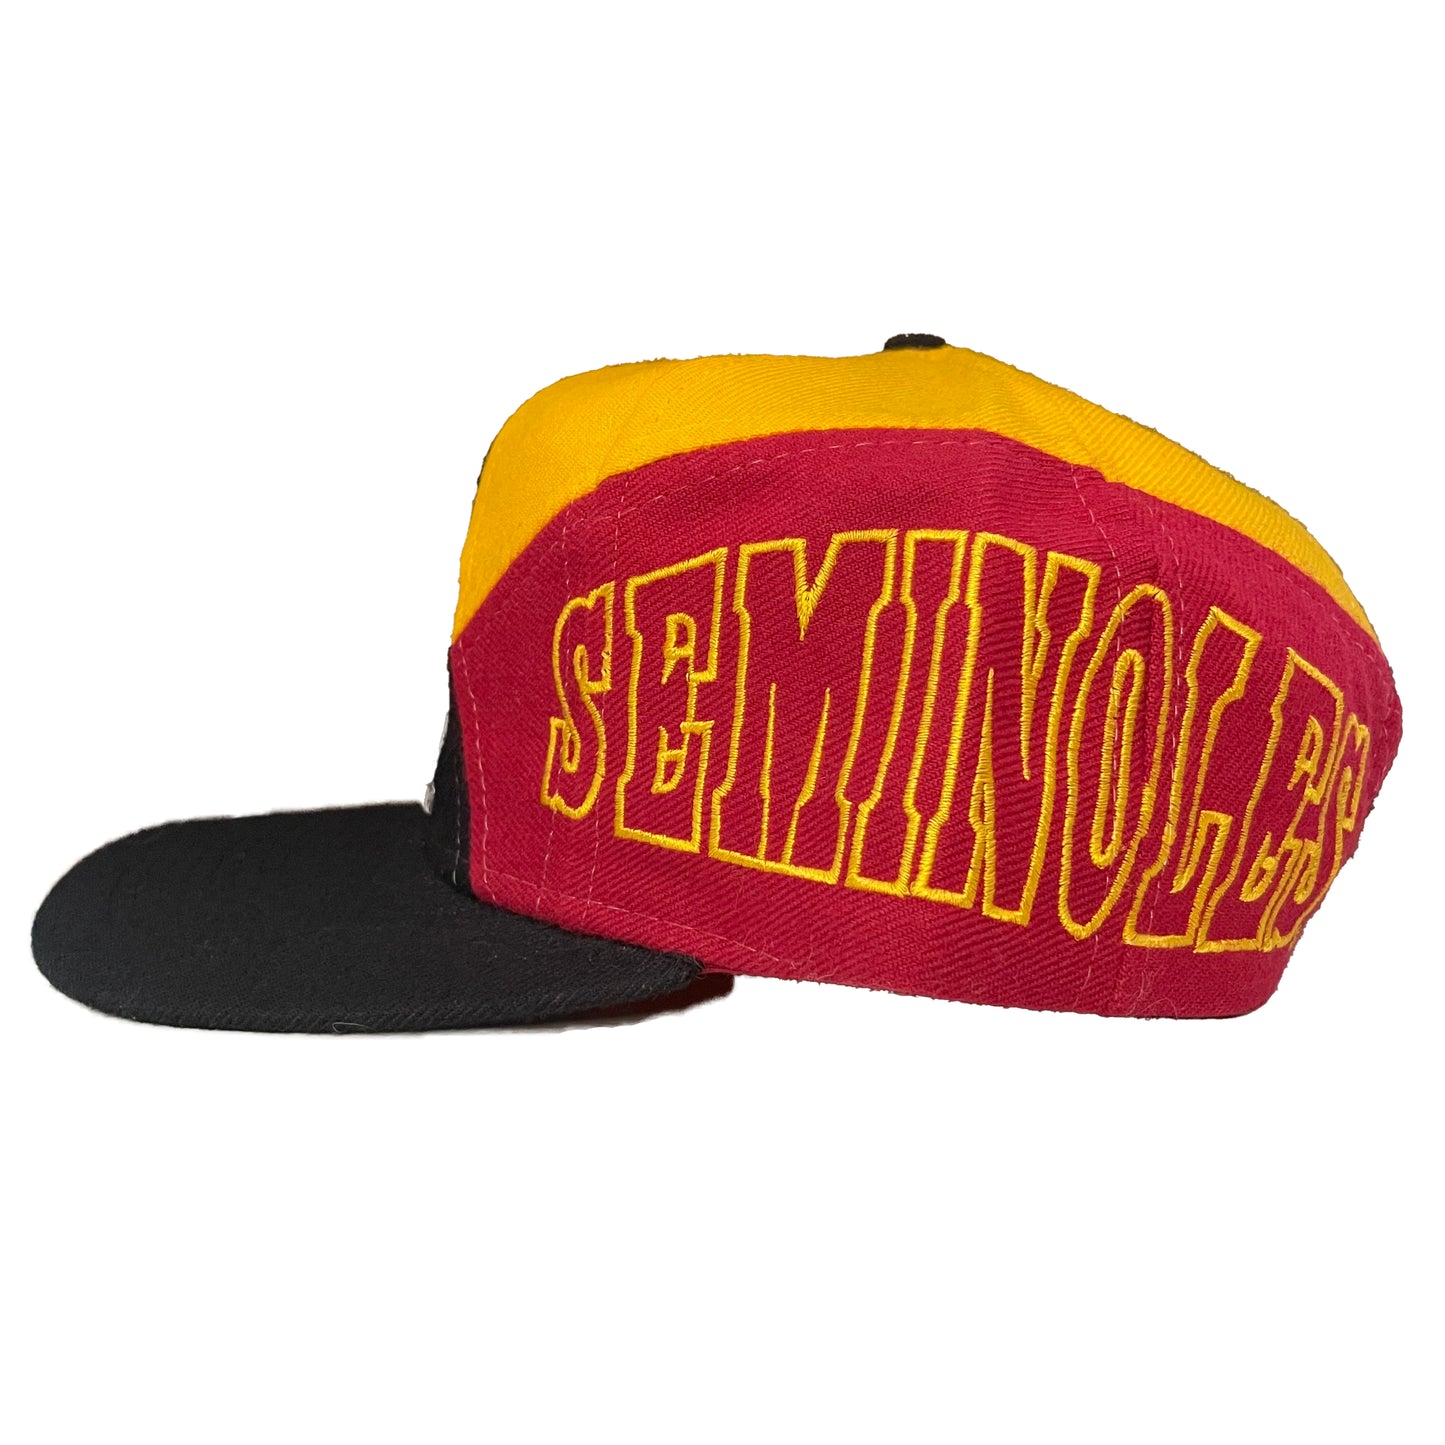 Florida State Seminoles FSU APEX hat